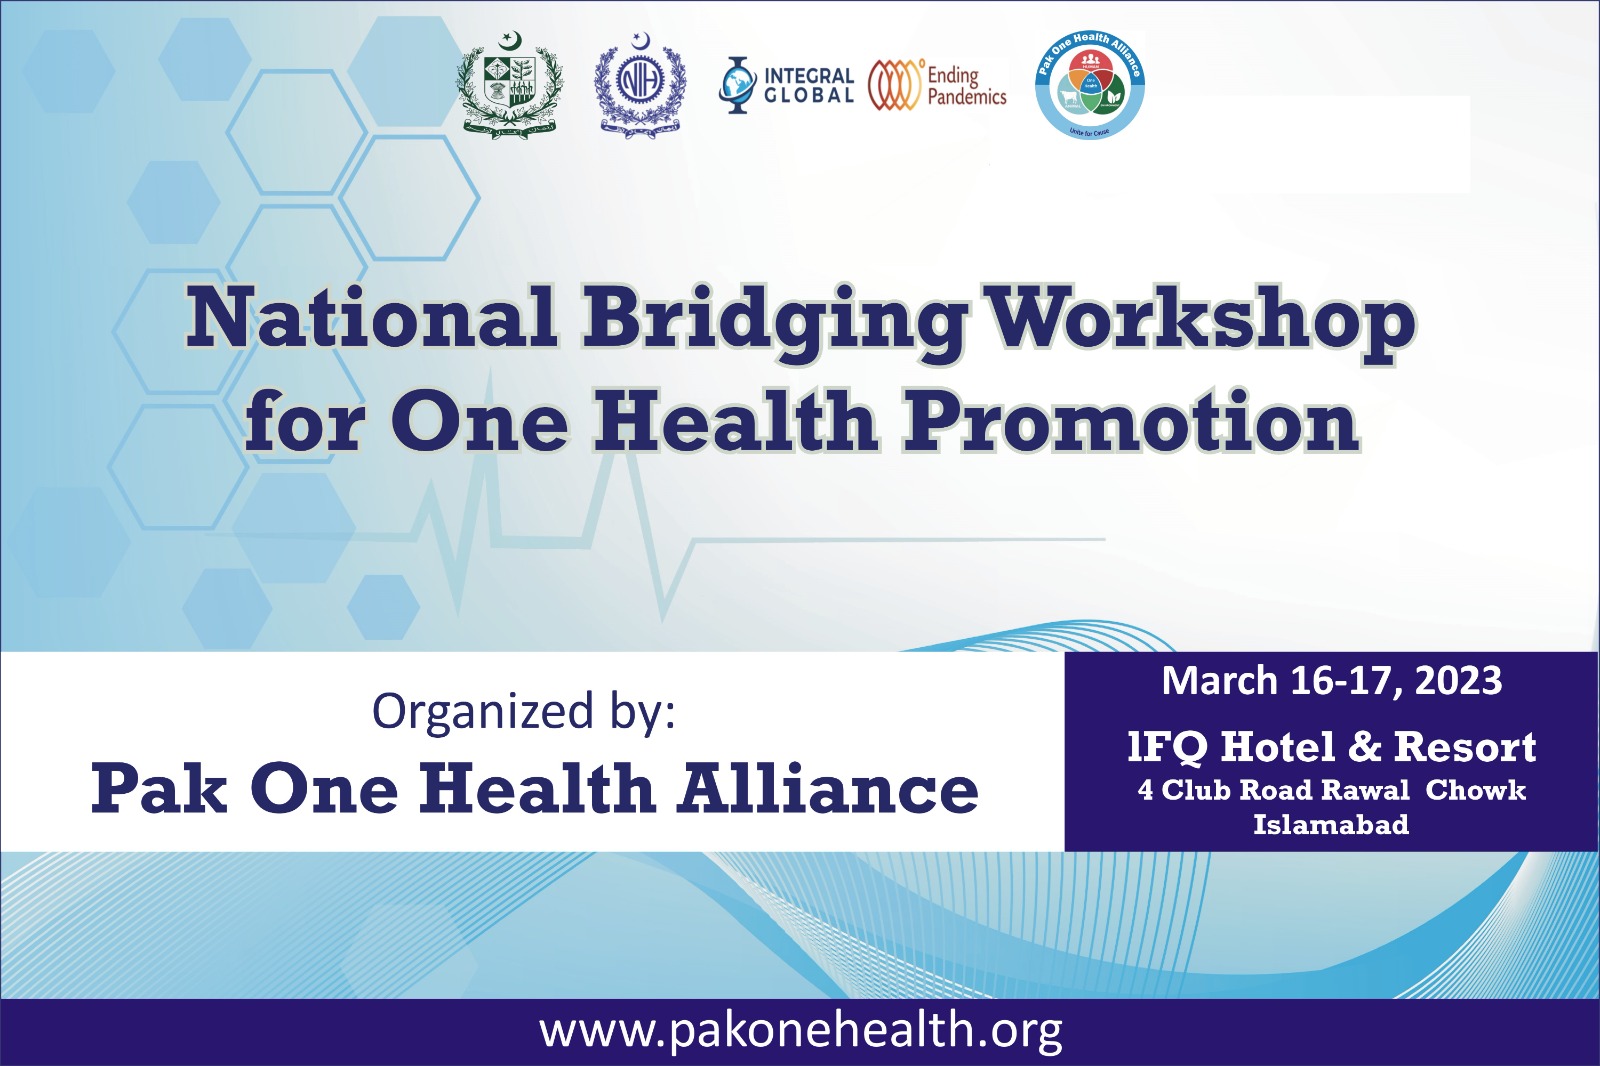 National Bridging Workshop for One Health Promotion